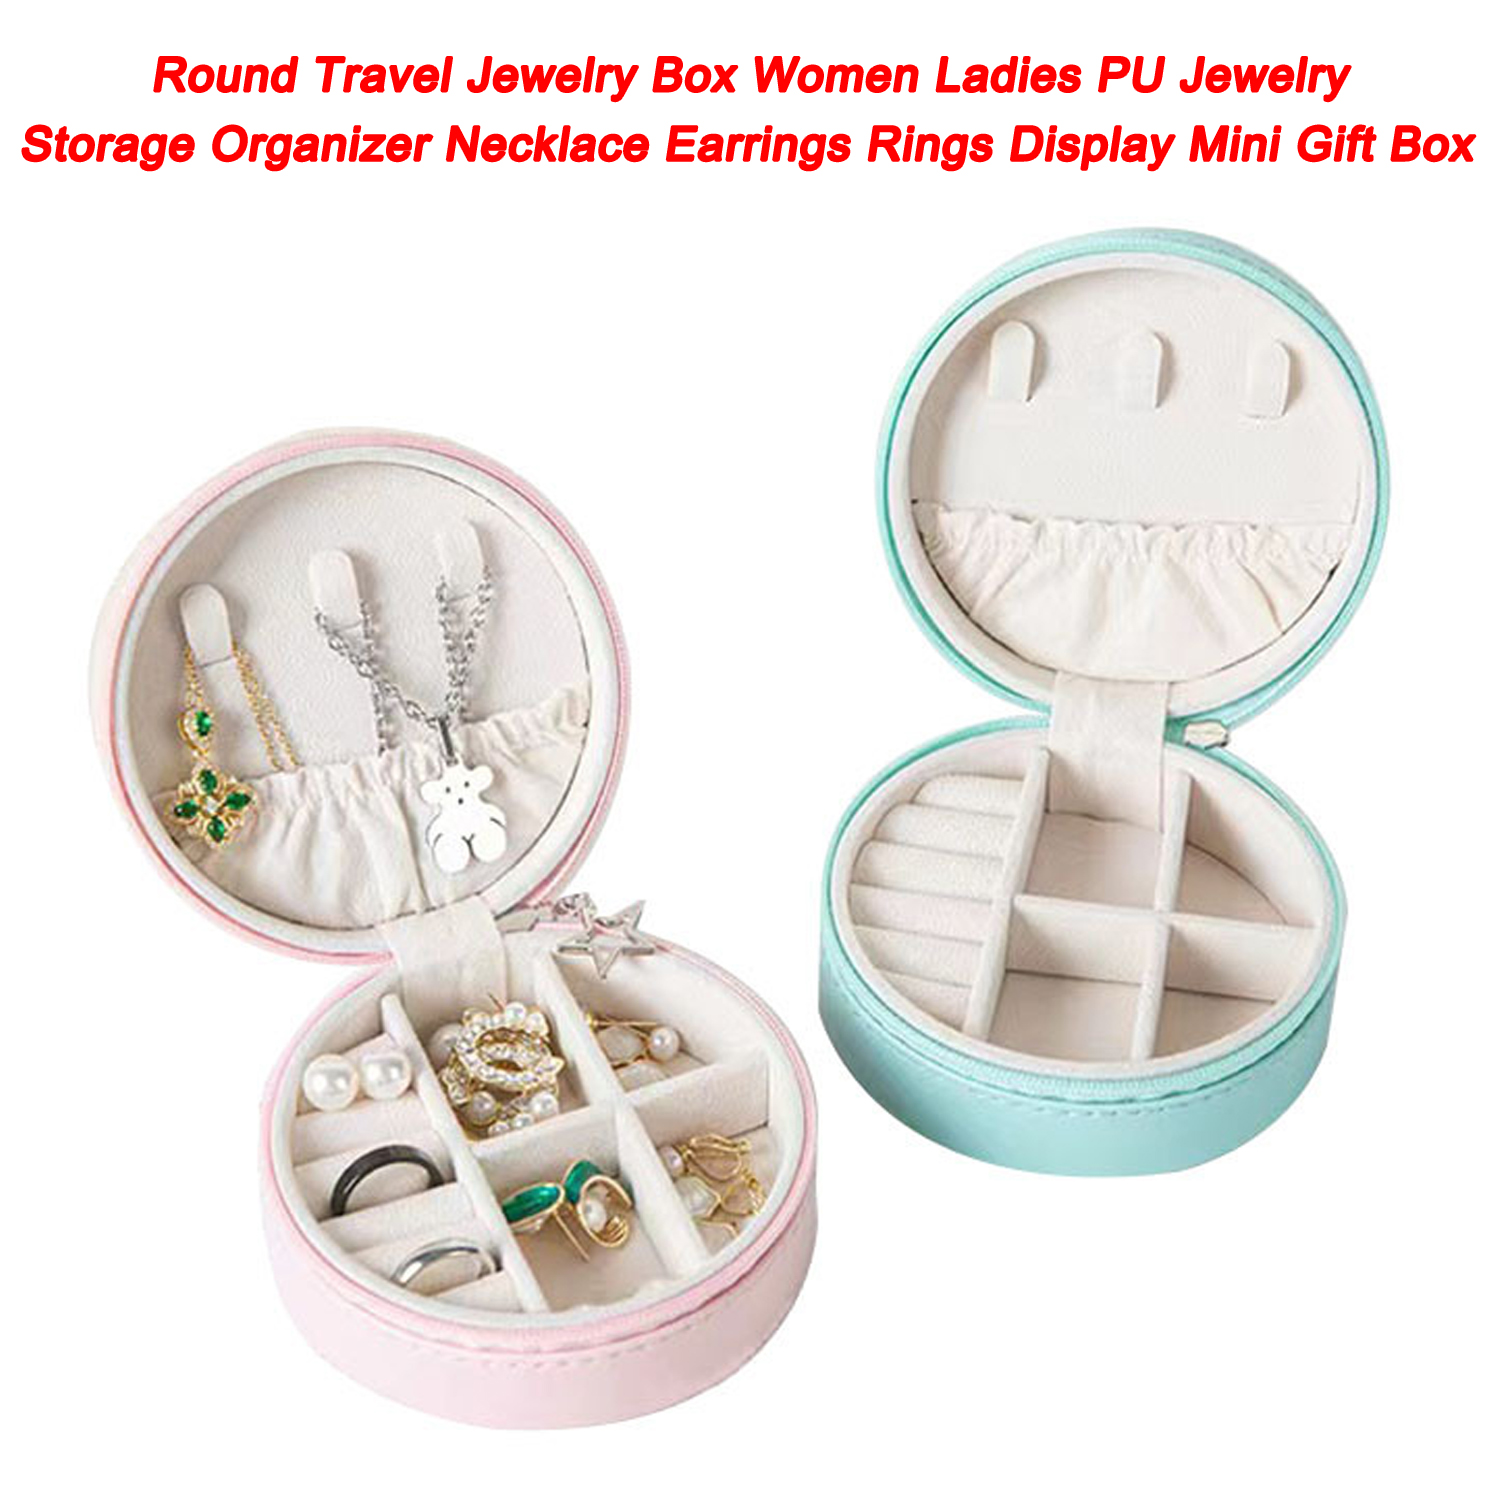 Caja redonda para joyas de viaje para mujer, organizador de almacenamiento de joyas de PU, collar, pendientes, anillos, minicaja de regalo